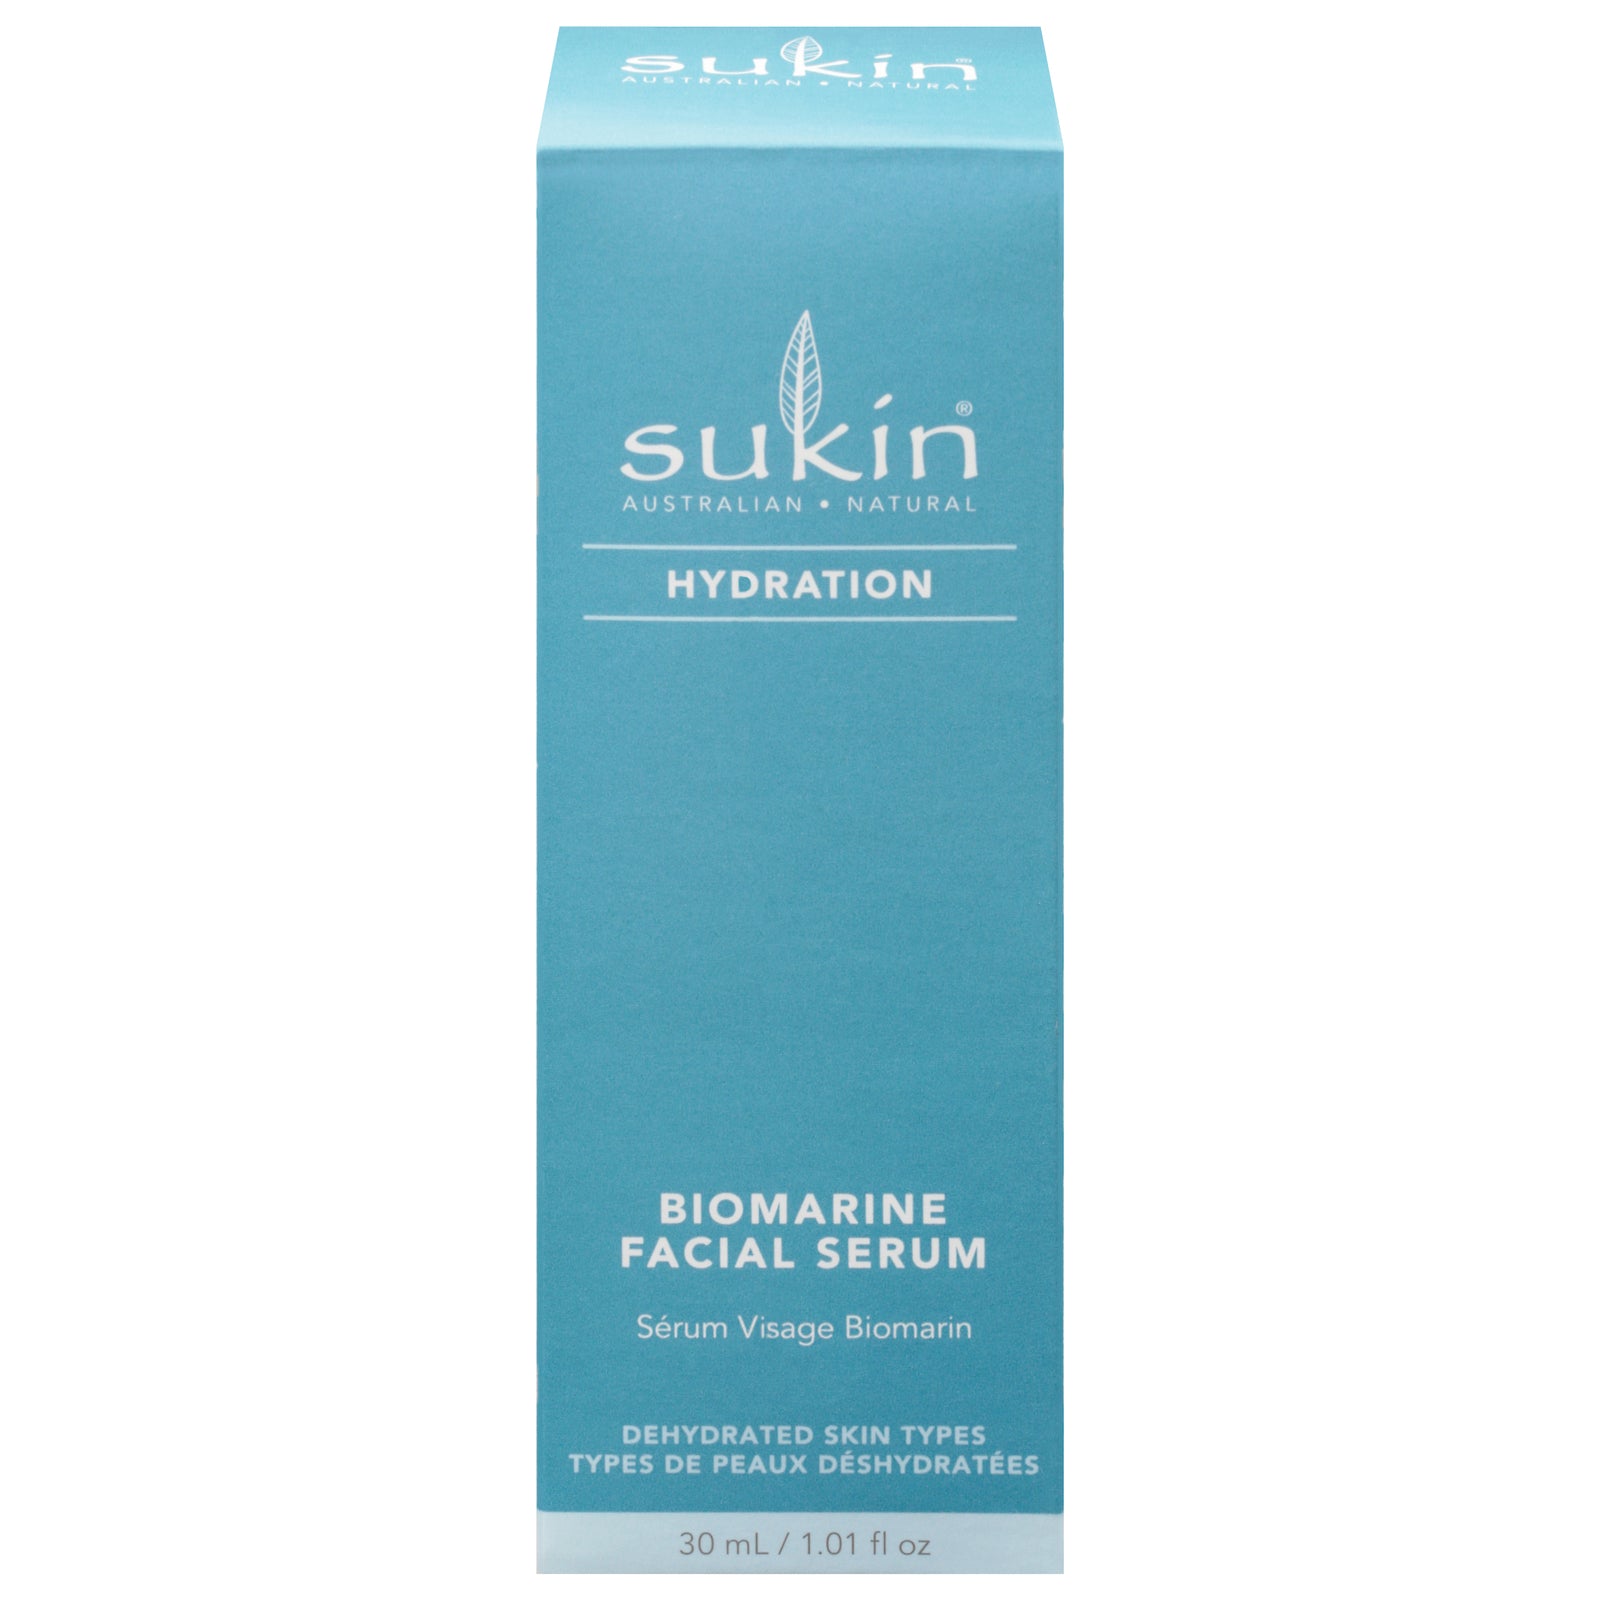 Sukin - Facial Serum Biomarine - 1 Each-1.01 Fz